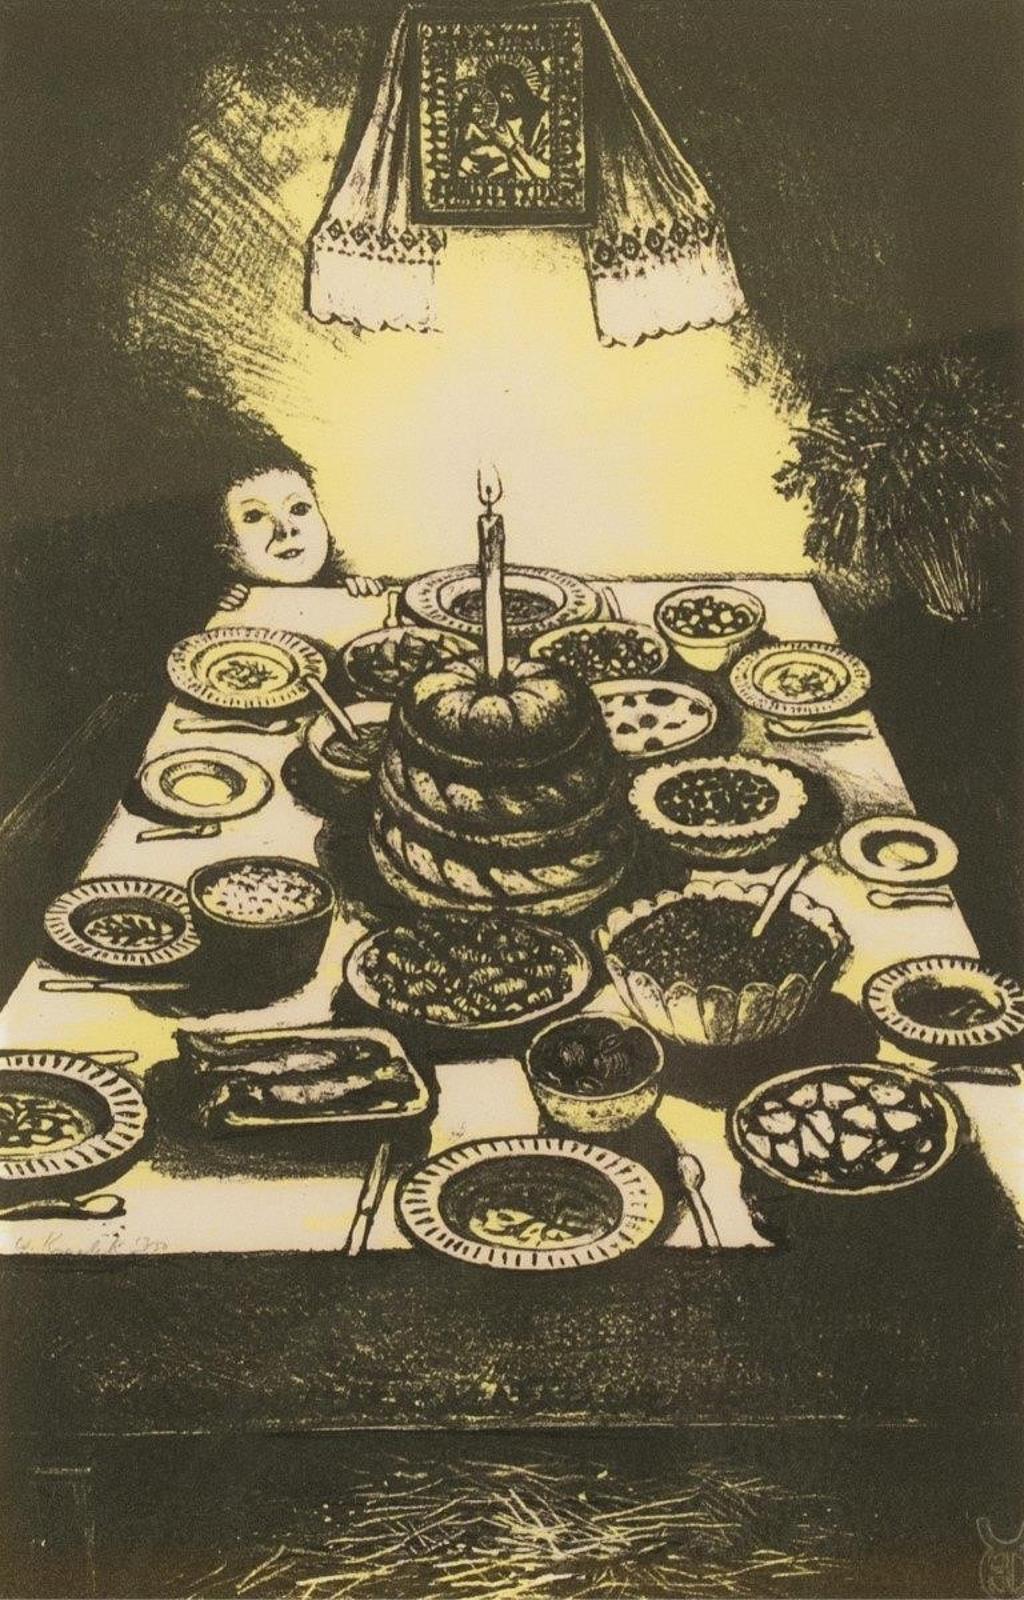 William Kurelek (1927-1977) - Ukranian Christmas Eve Feast; 1973